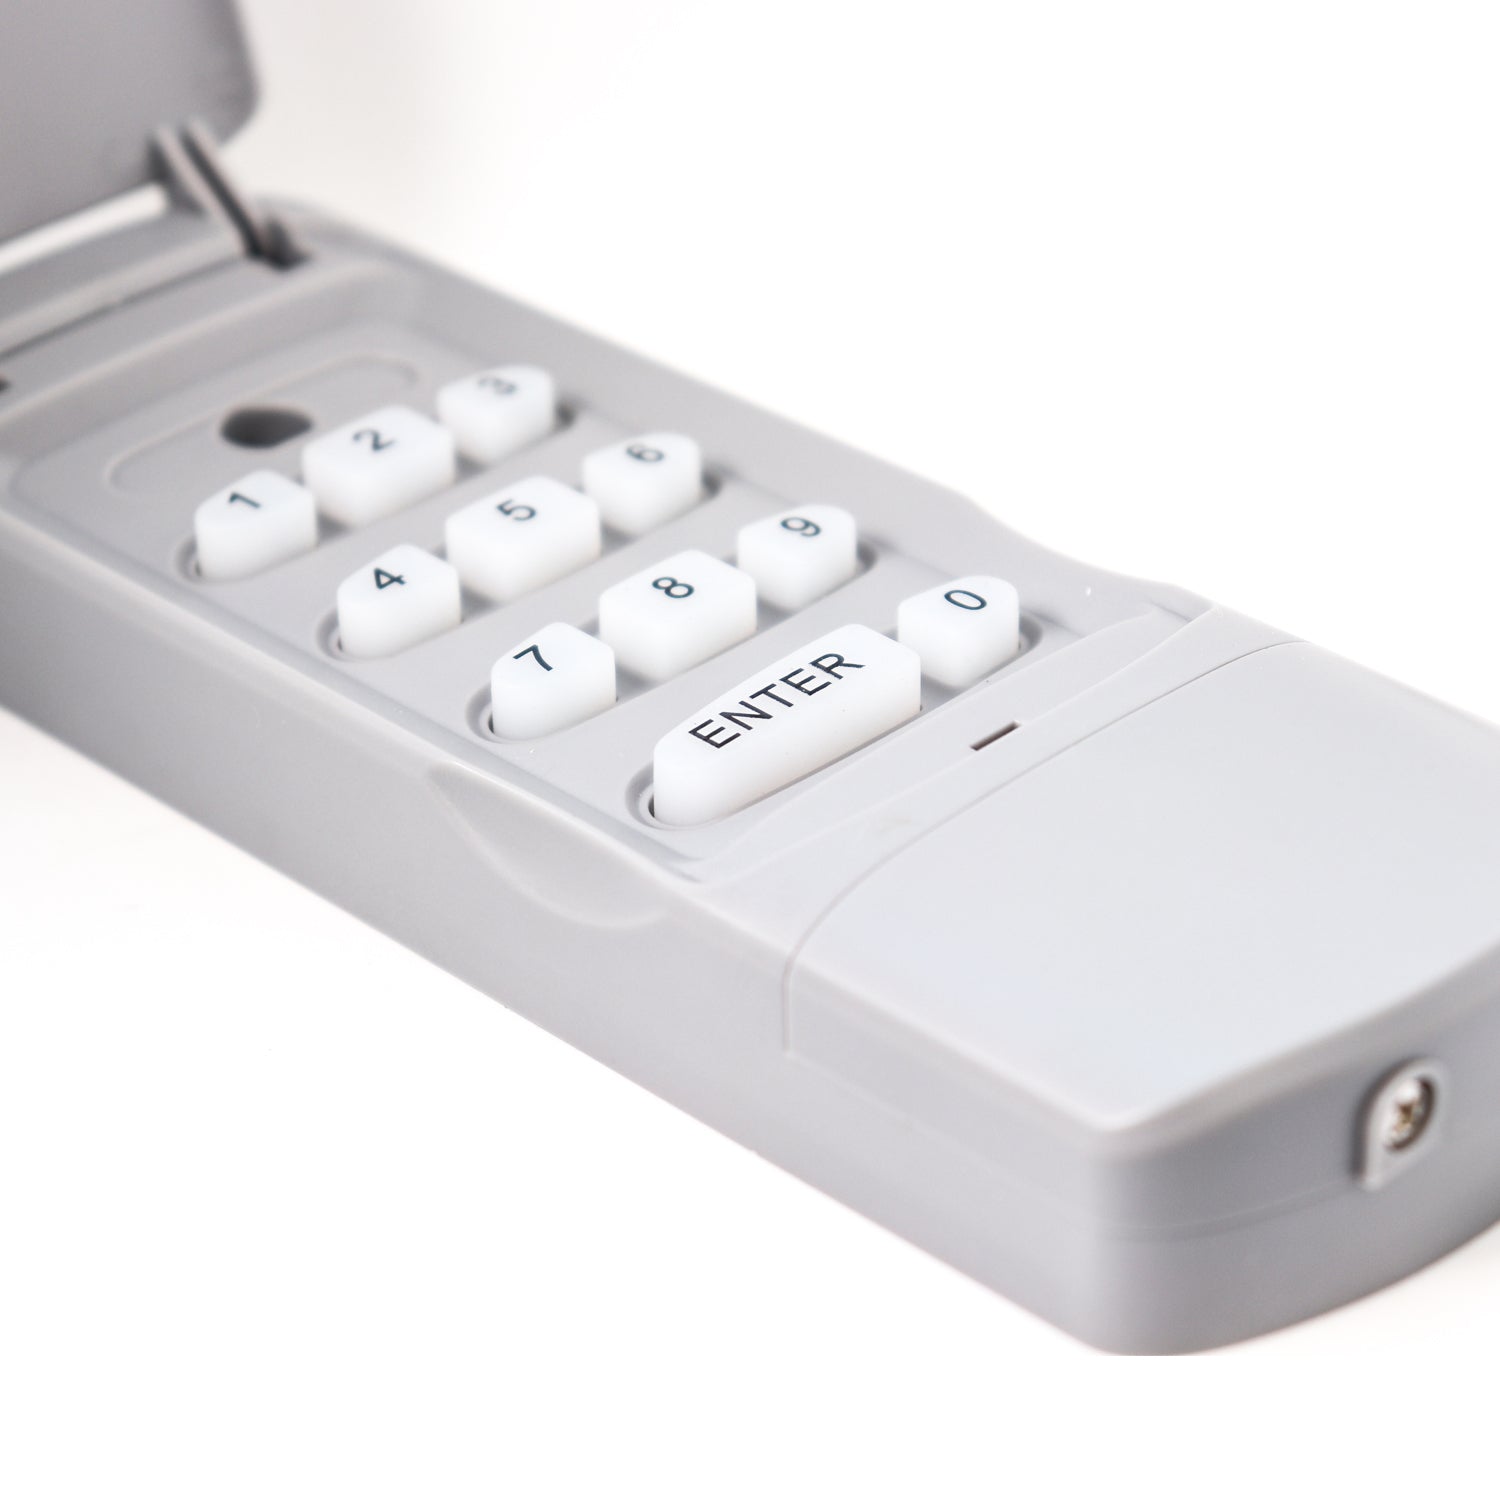 Belko® Wireless Keypad/Fernbedienung mit Zahlenfeld für Schwing- & Roll-Tore für Garagentor-Antrieb, 4 Kanal, 433 Mhz, Codetaster Handsender